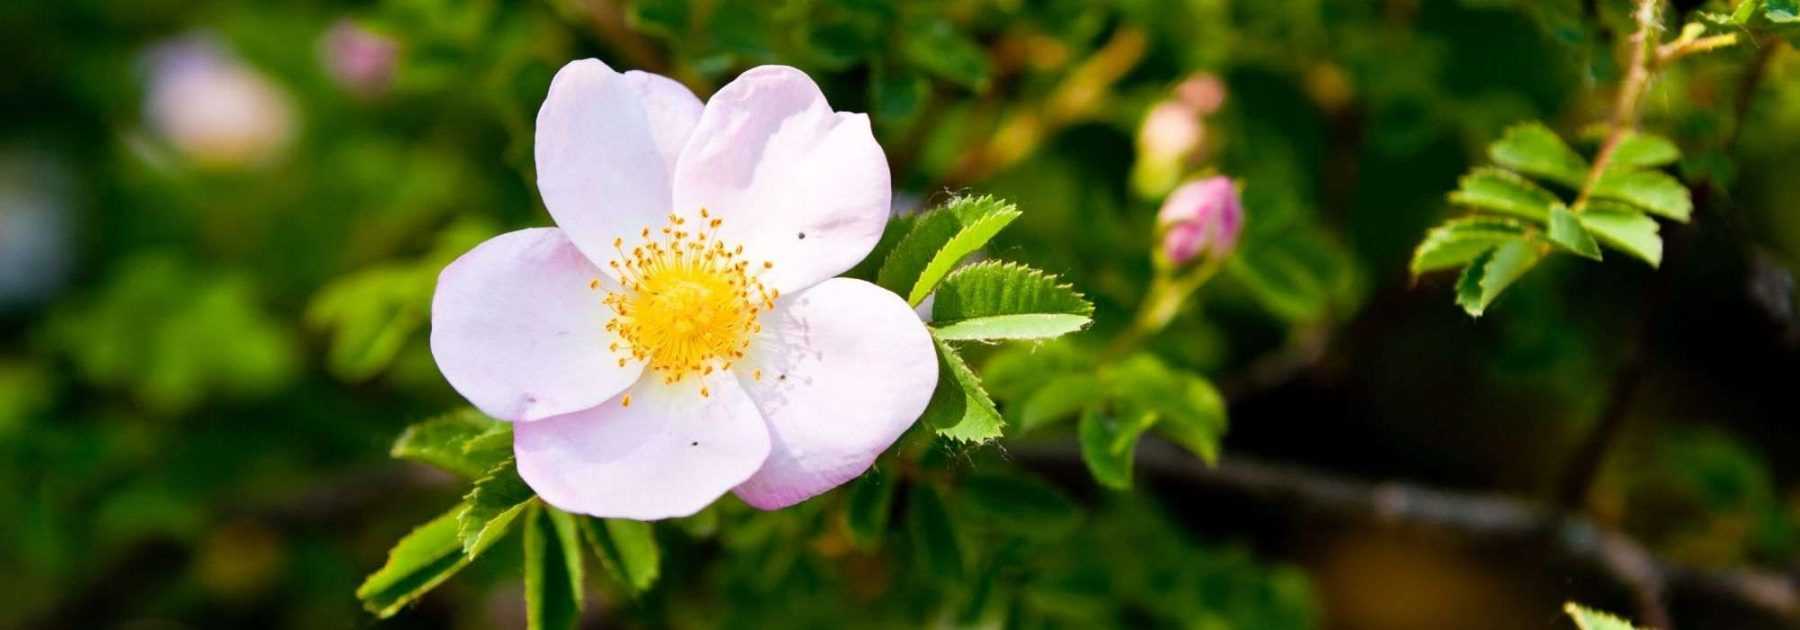 9 rosiers à fleurs d’églantine roses